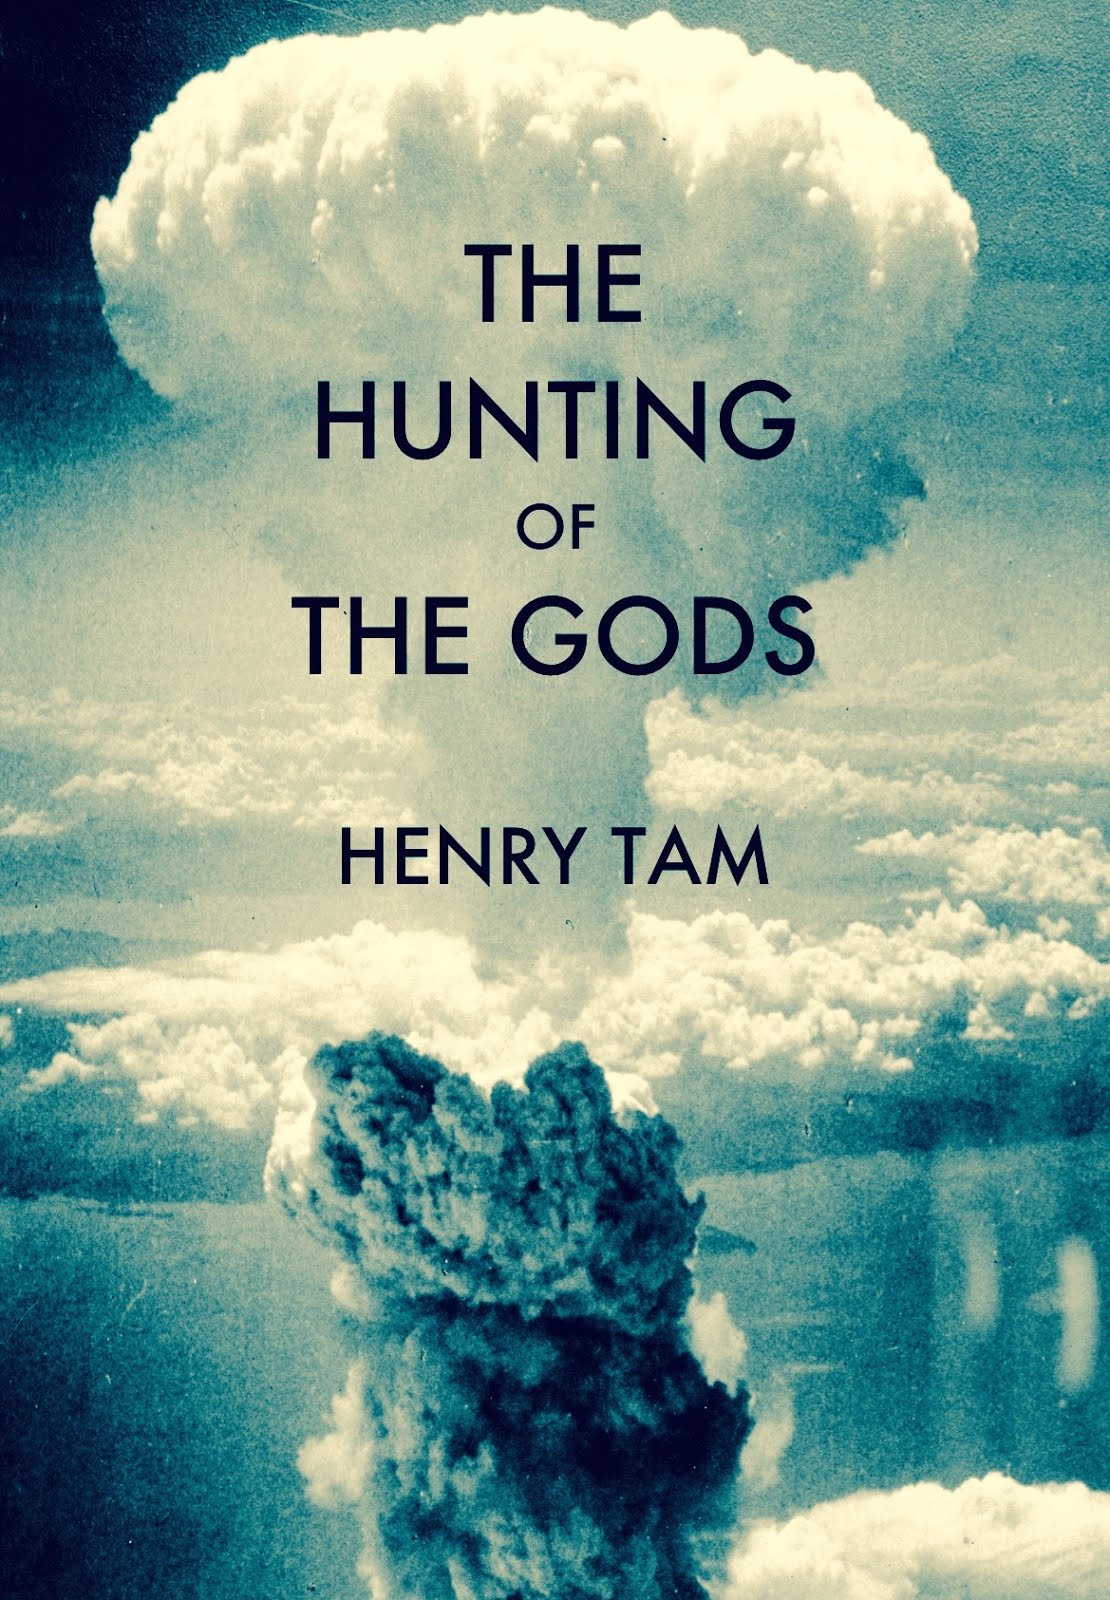 Henry Tam's New Novel